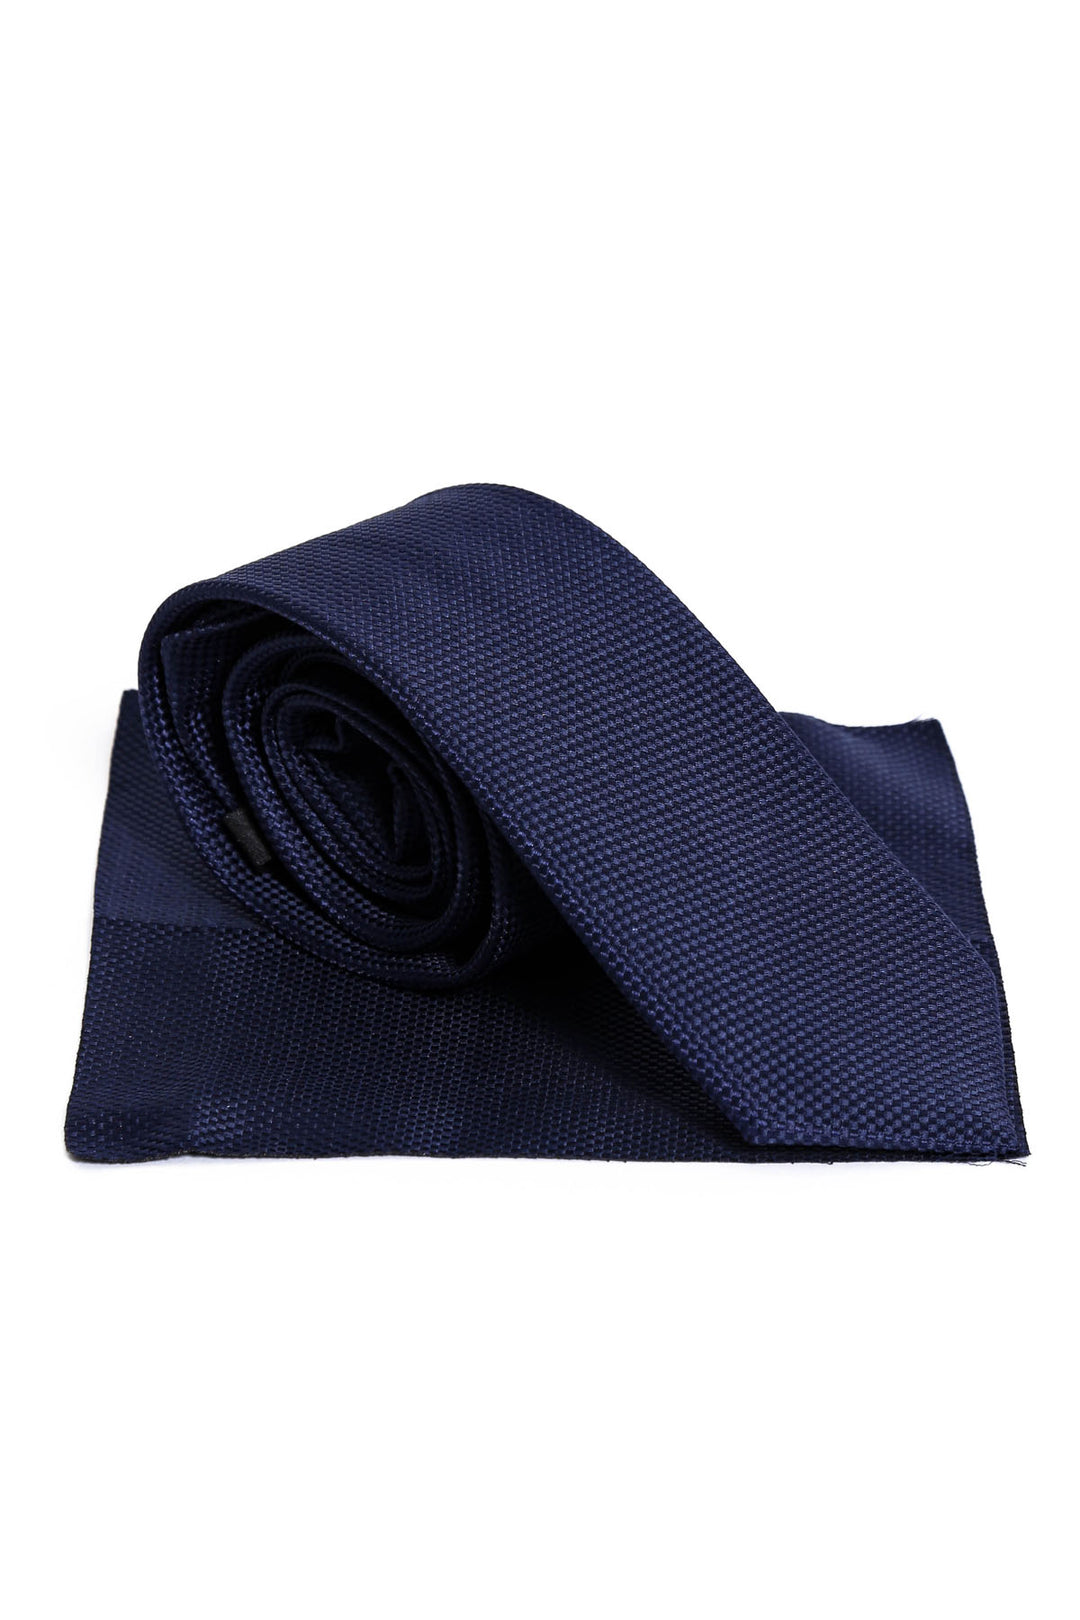 Patterned Men Navy Blue Tie – Wessi